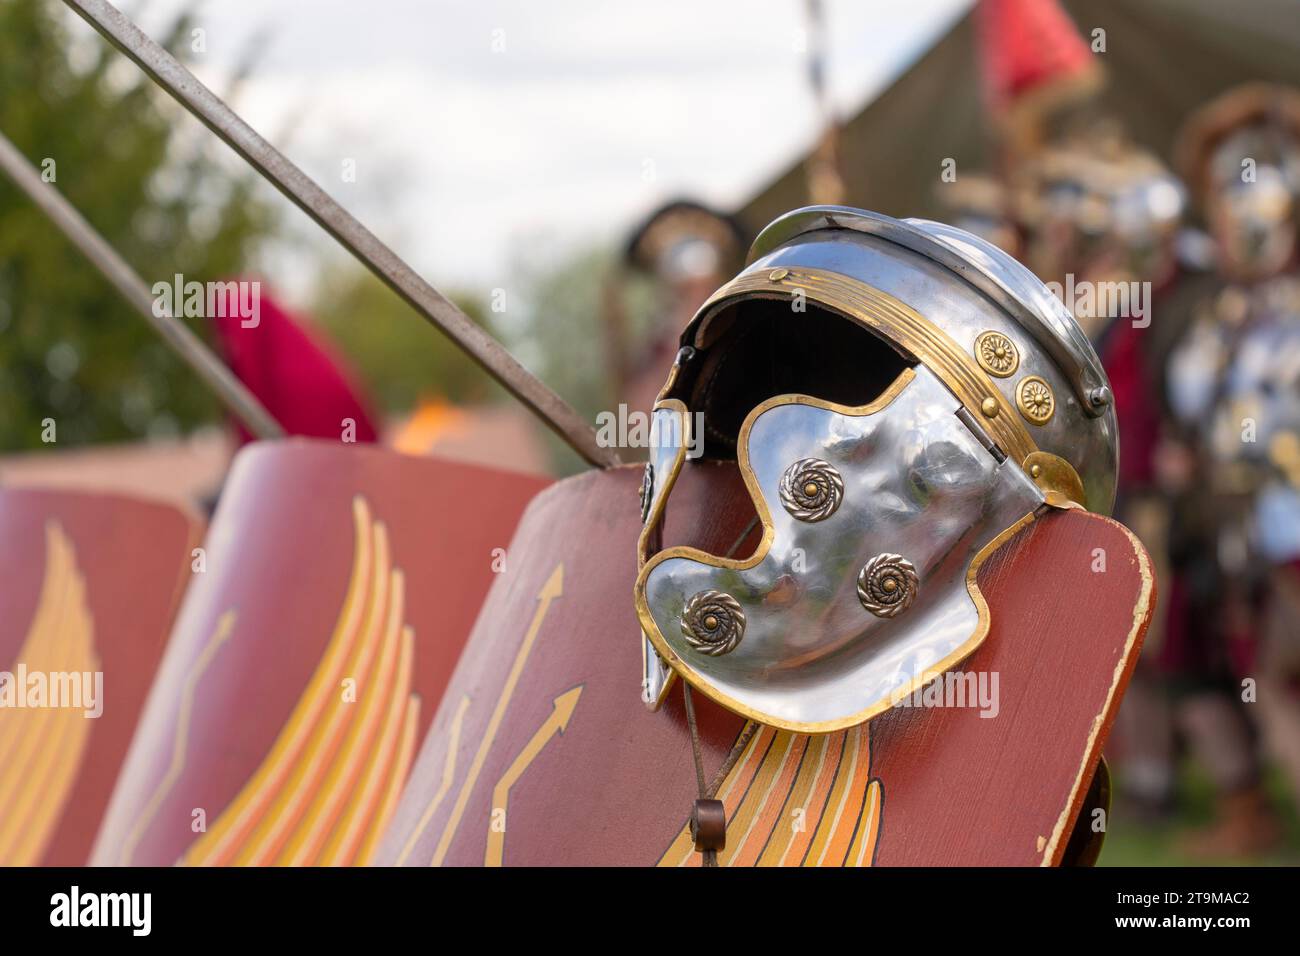 Ancient Roman legionary helmet on a red legionary shield Stock Photo